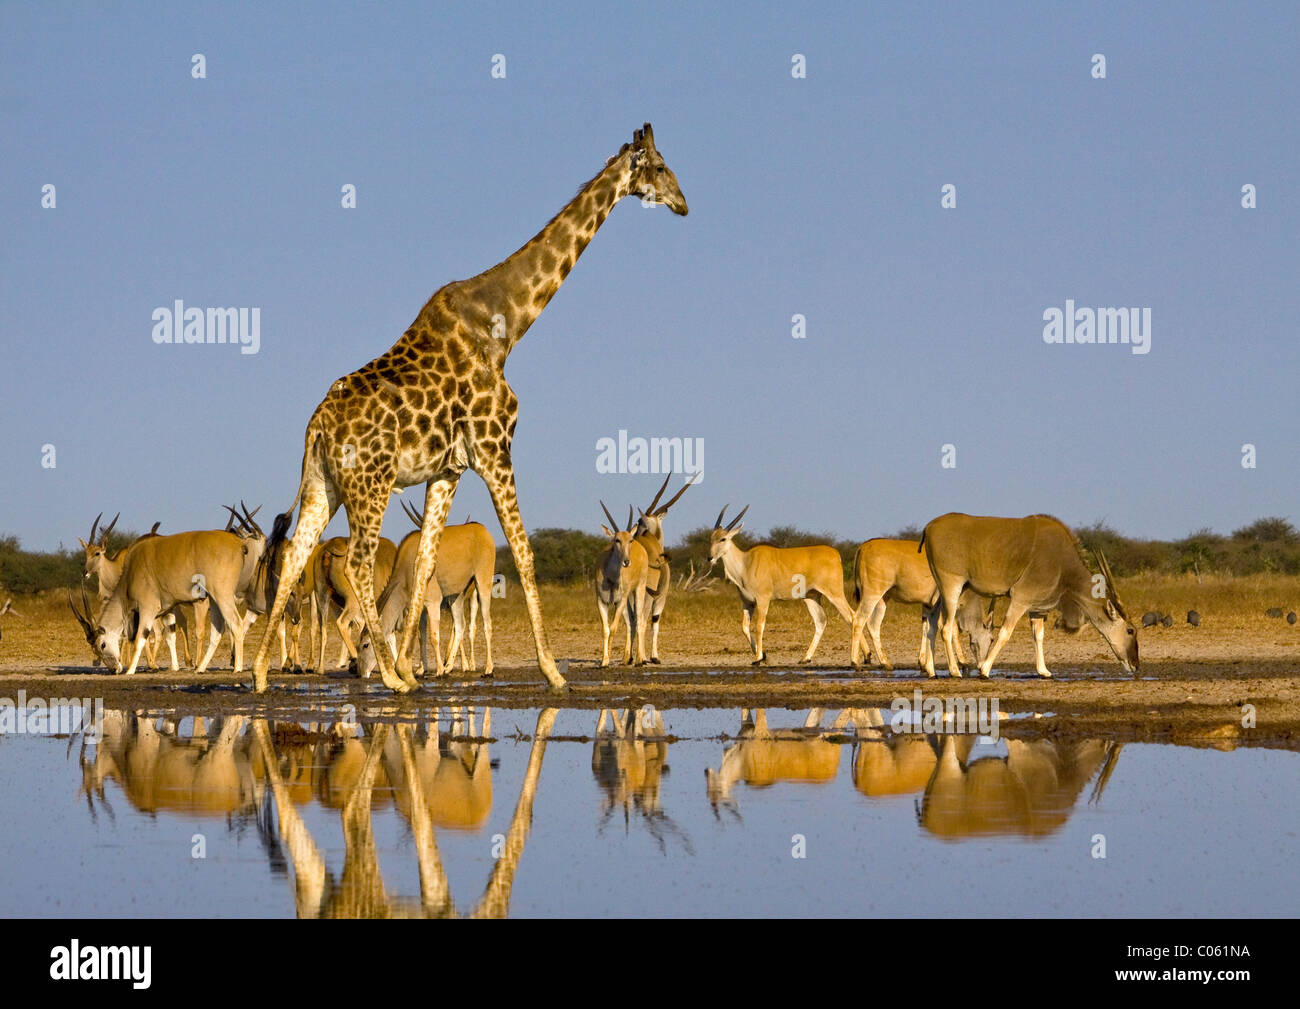 Giraffe and Eland at waterhole, Etosha National Park, Namibia. Stock Photo